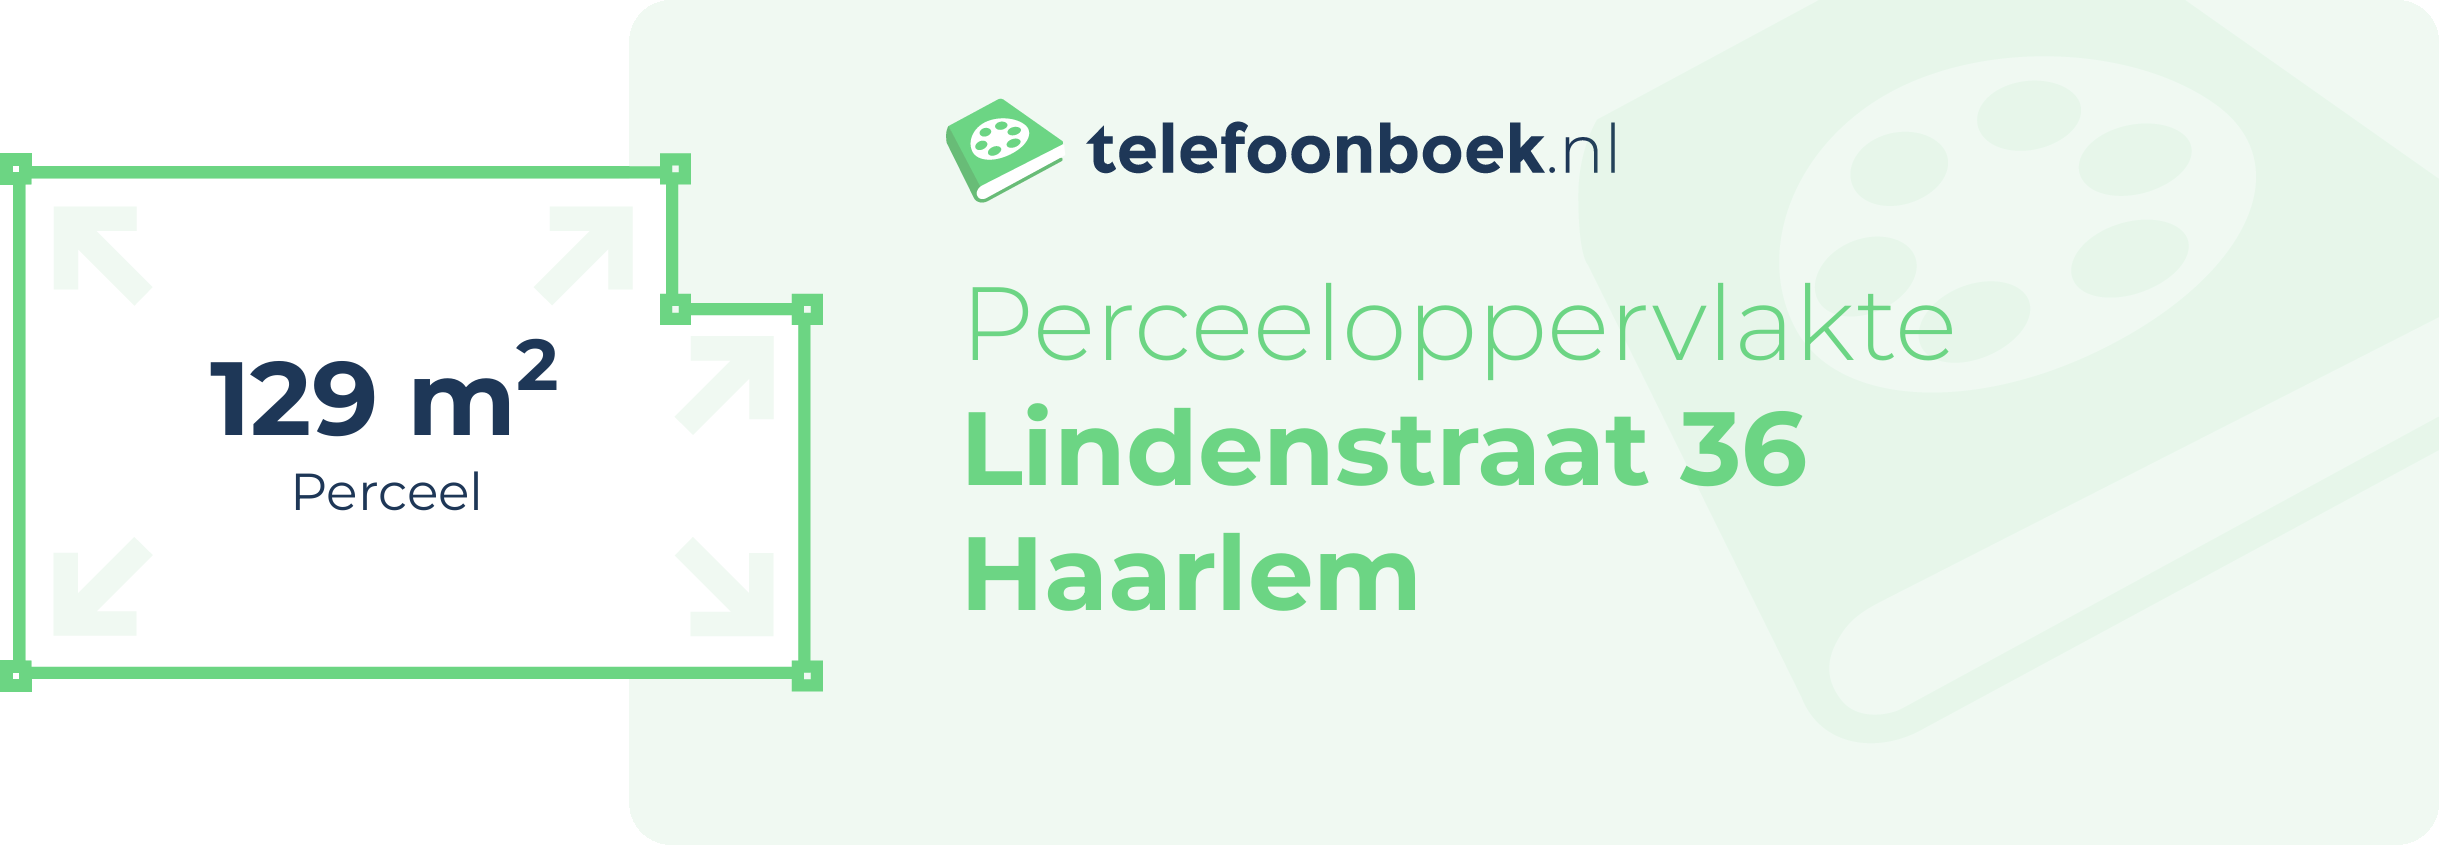 Perceeloppervlakte Lindenstraat 36 Haarlem